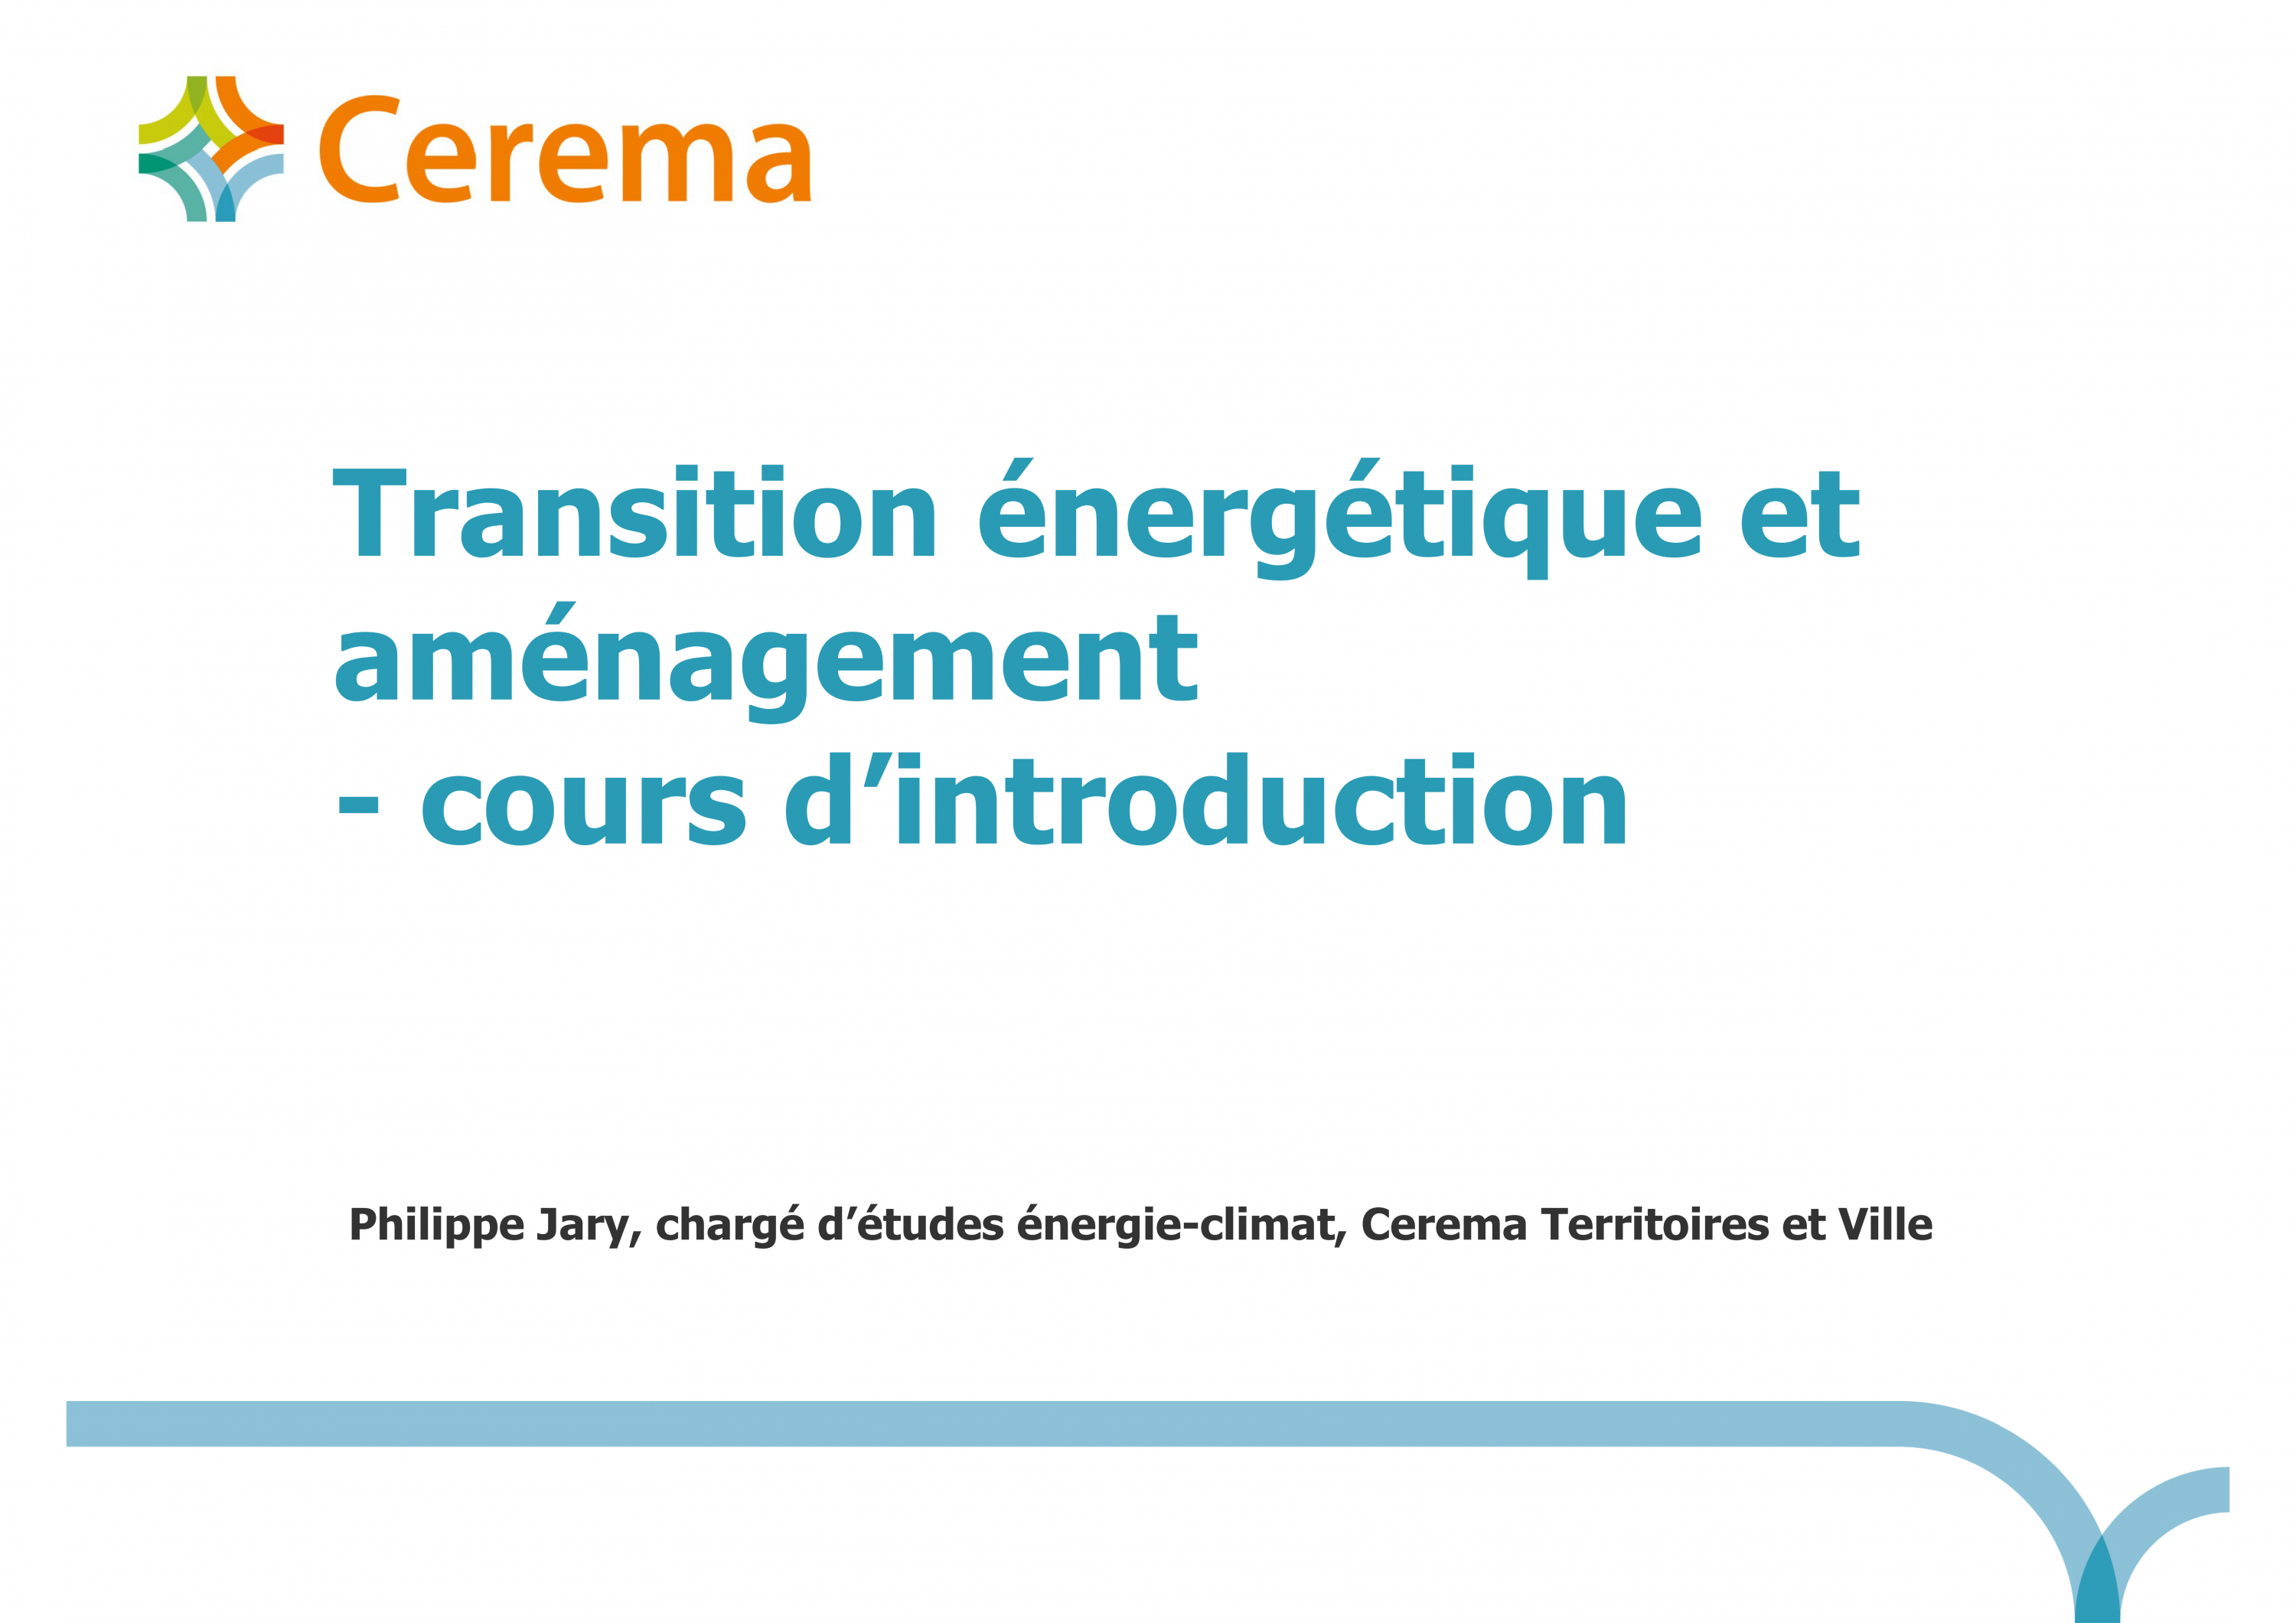 Diapositive du cours d'introduction "Transition énergétique et aménagement